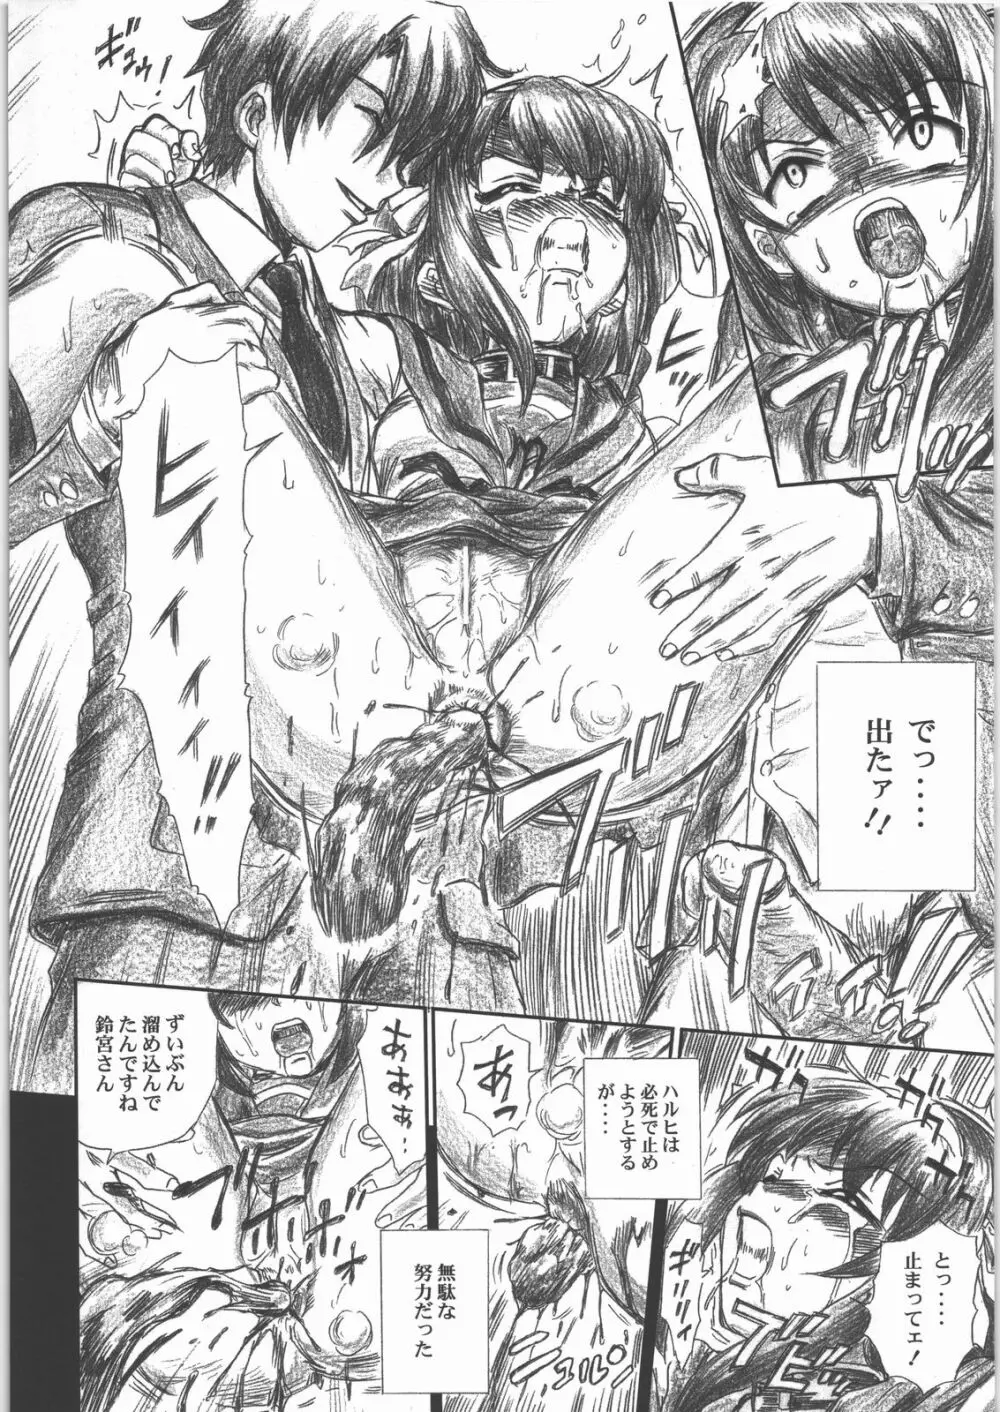 TAIL-MAN HARUHI SUZUMIYA BOOK 19ページ